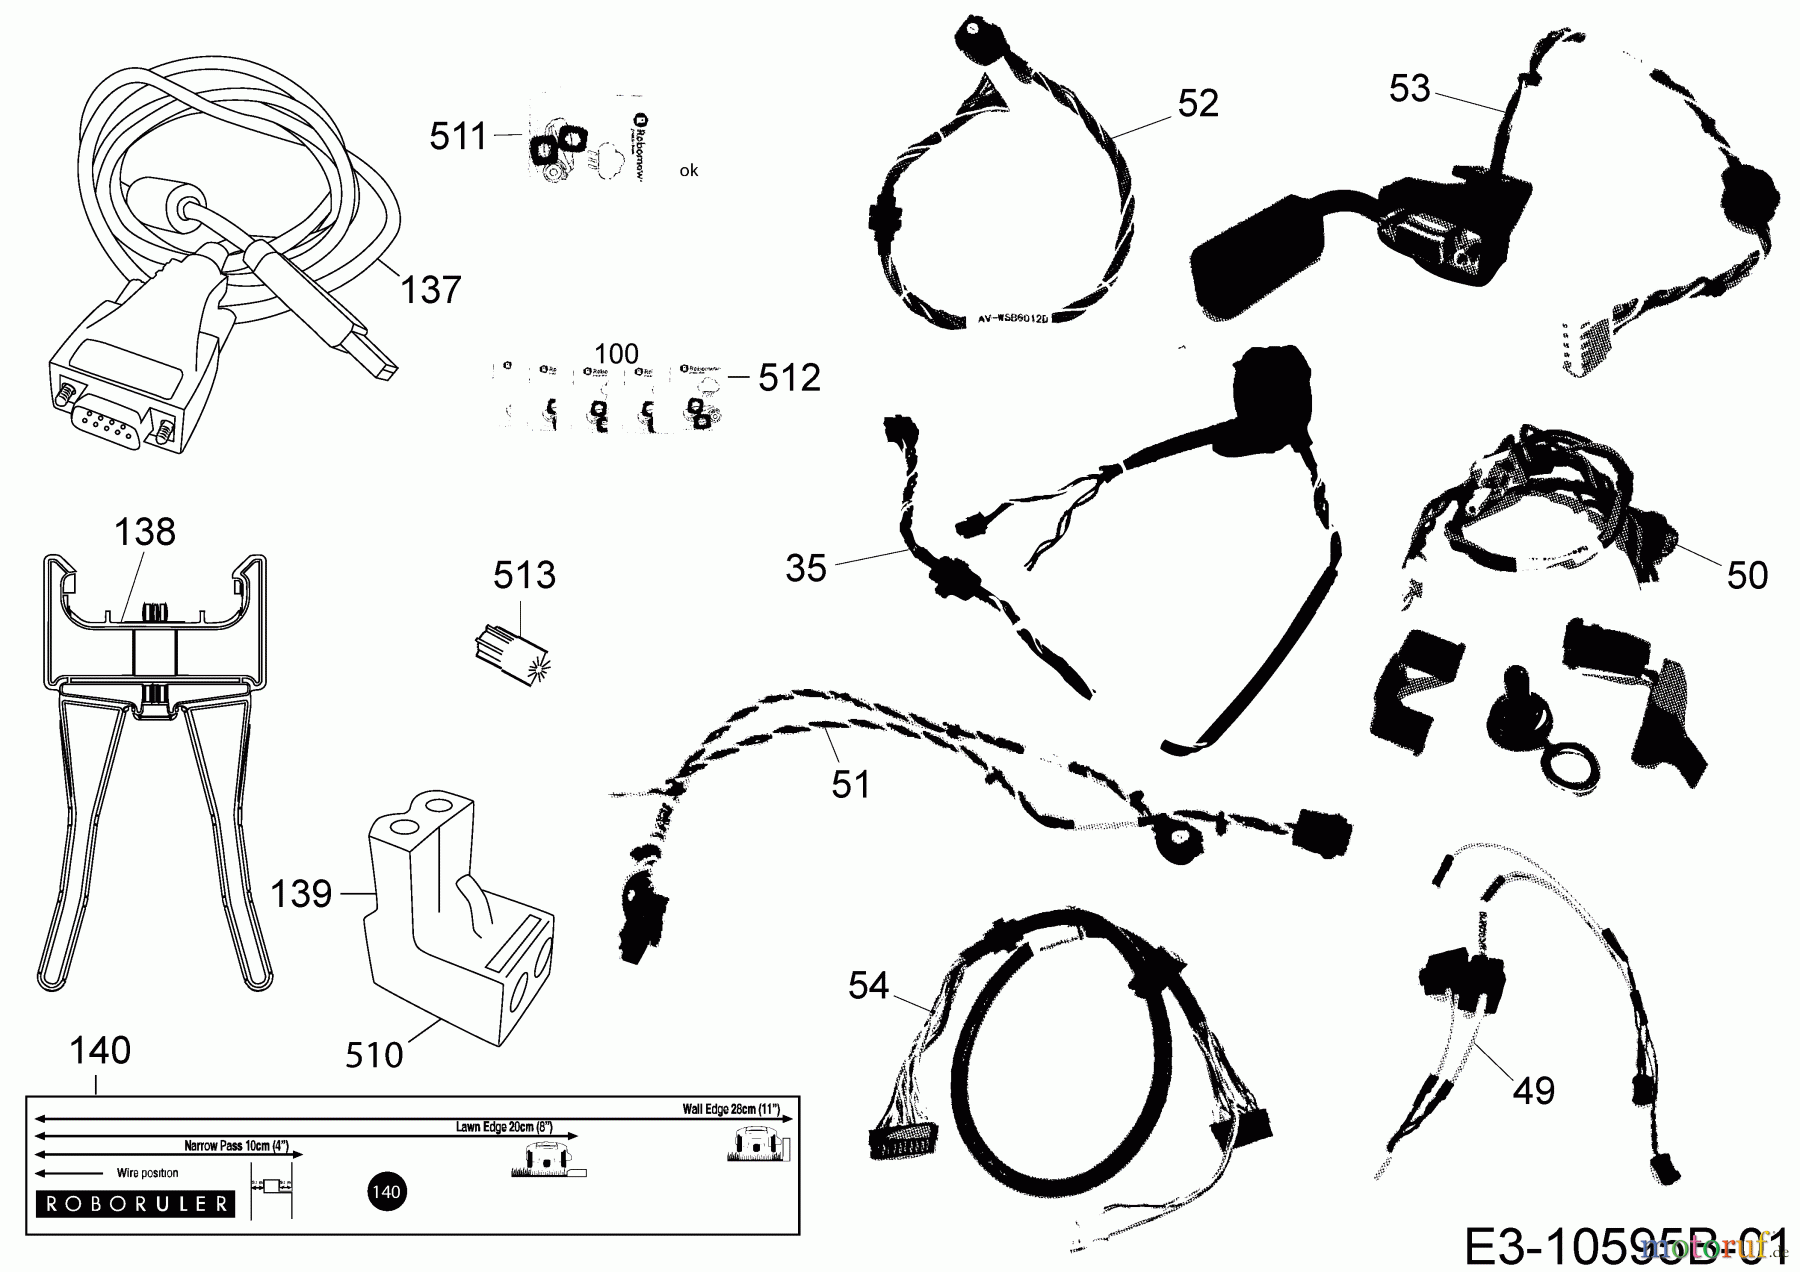  Robomow Mähroboter MS 1800 (White) PRD6200YW   (2014) Kabel, Kabelanschluß, Regensensor, Werkzeug